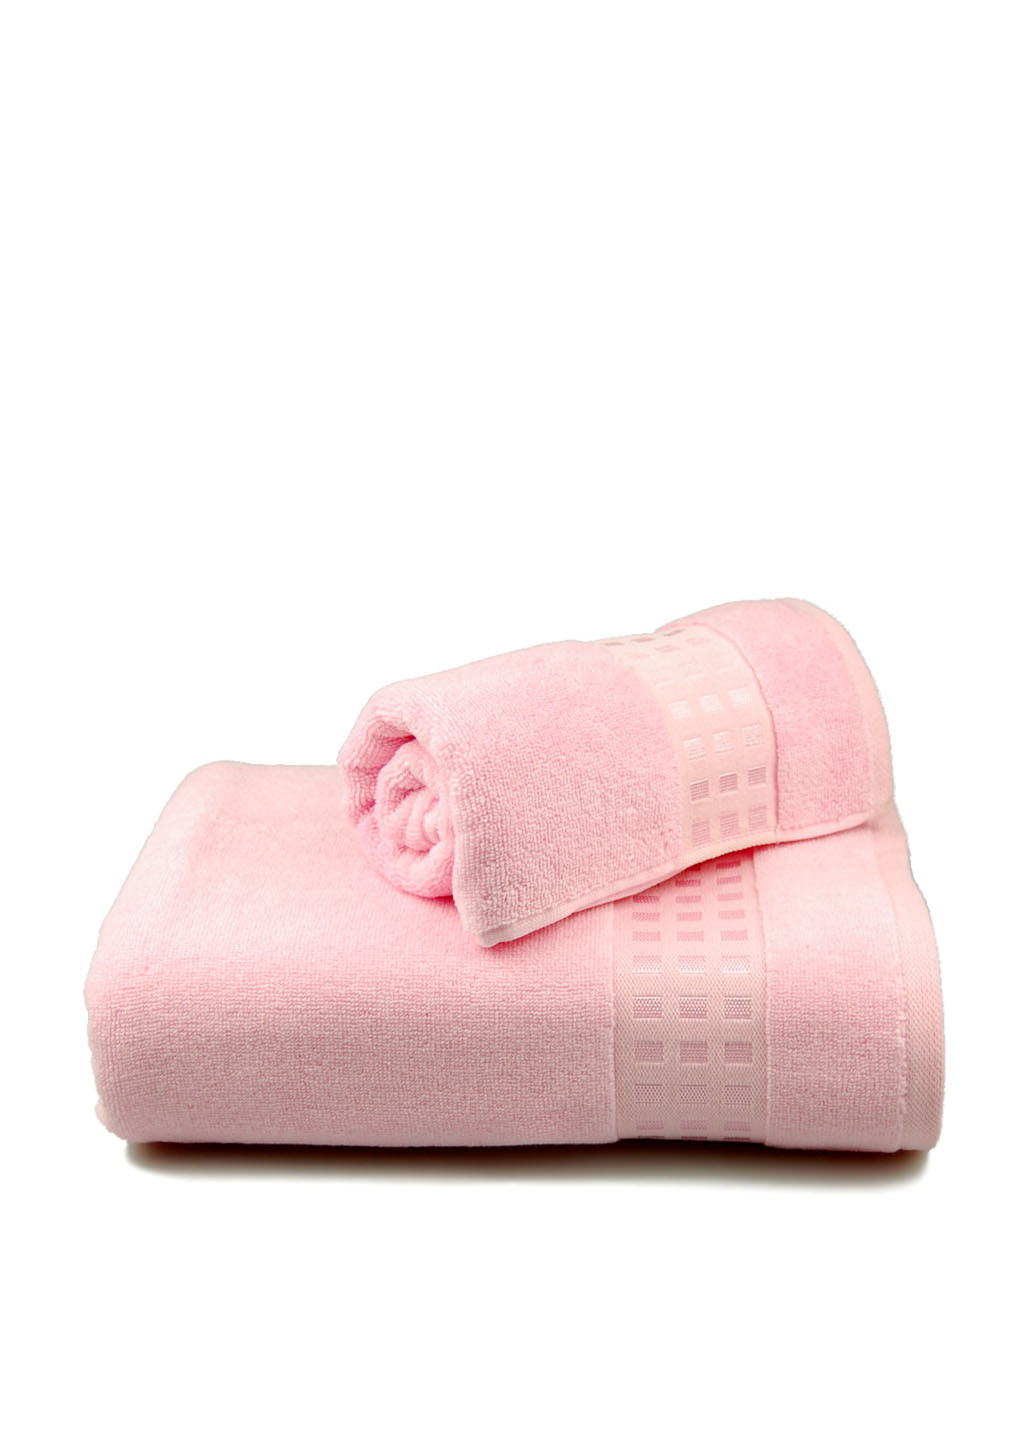 Home Line полотенце, 50х90 см геометрический розовый производство - Турция